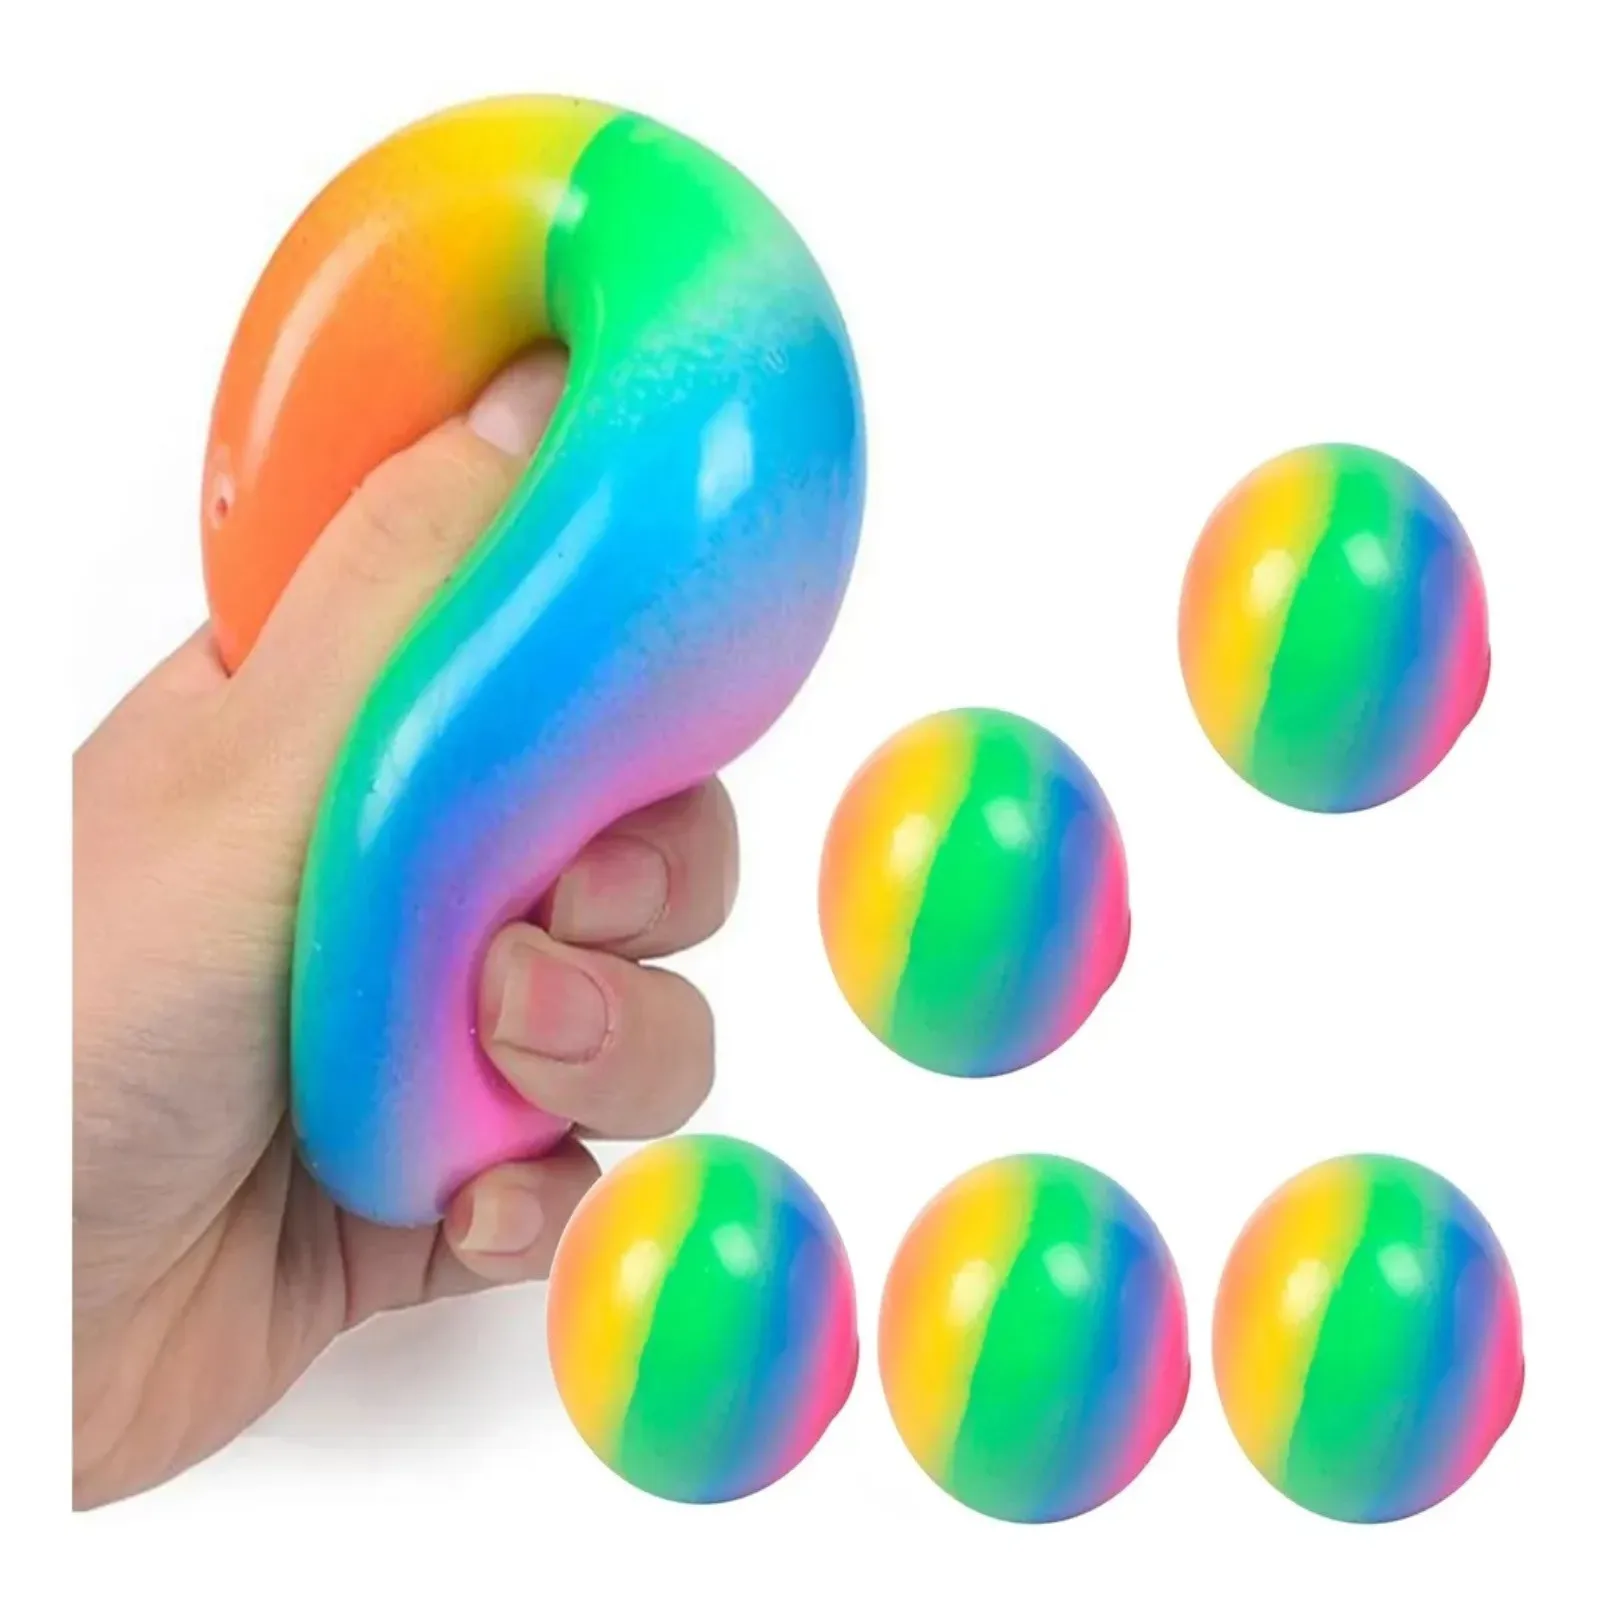 

Игрушка антистресс сжимаемые шарики креативная красочная Новинка ручной захват давление 7 см игрушки для детей сжимаемая игрушка